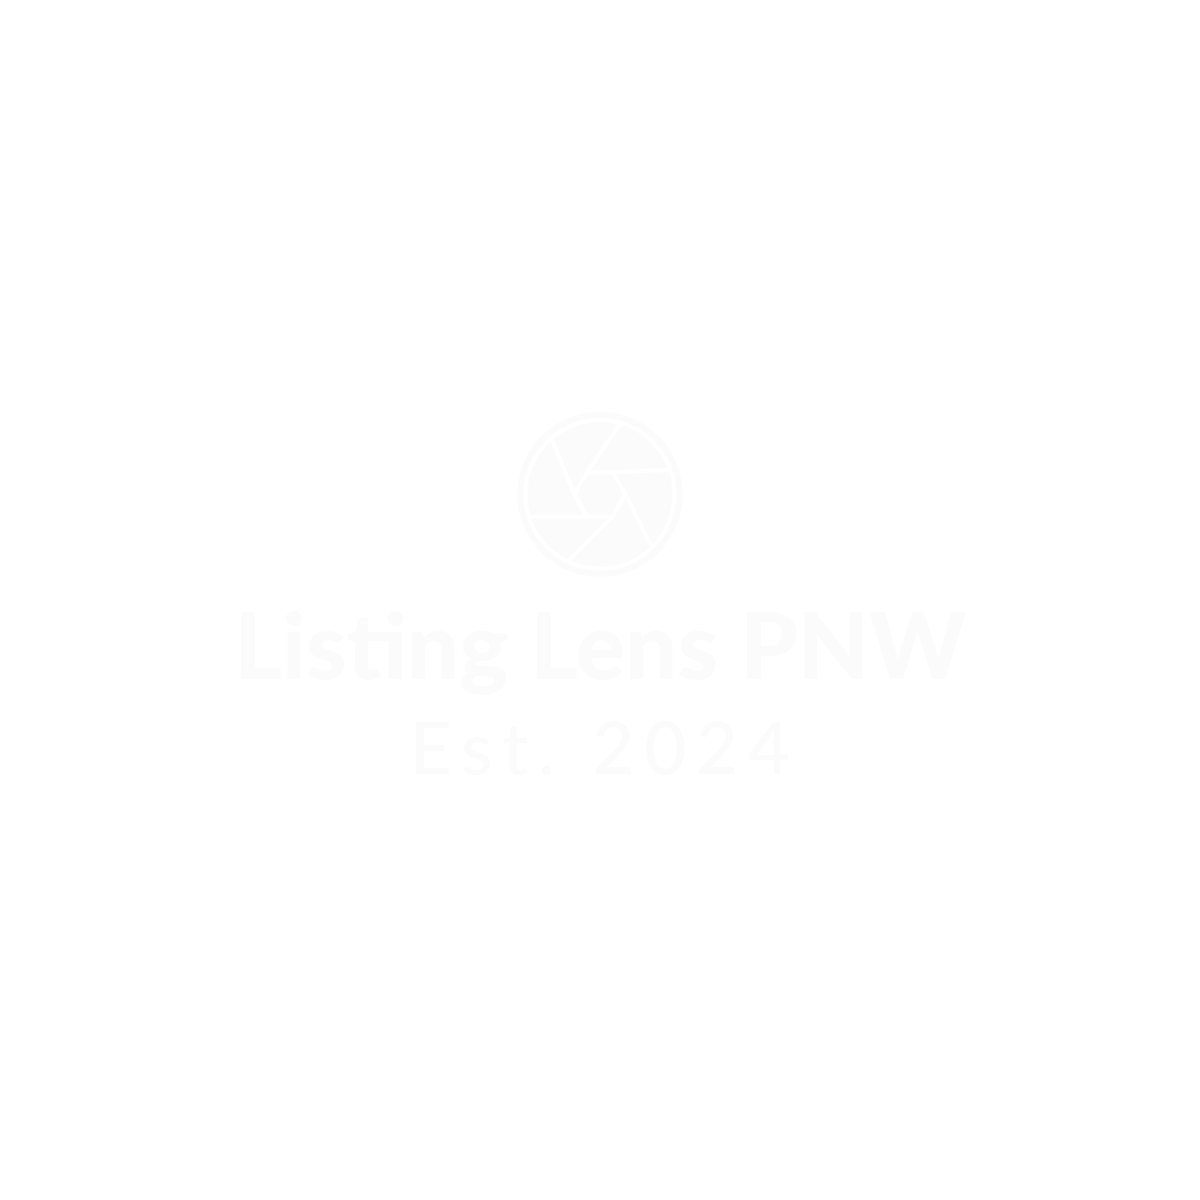 Listing Lens PNW